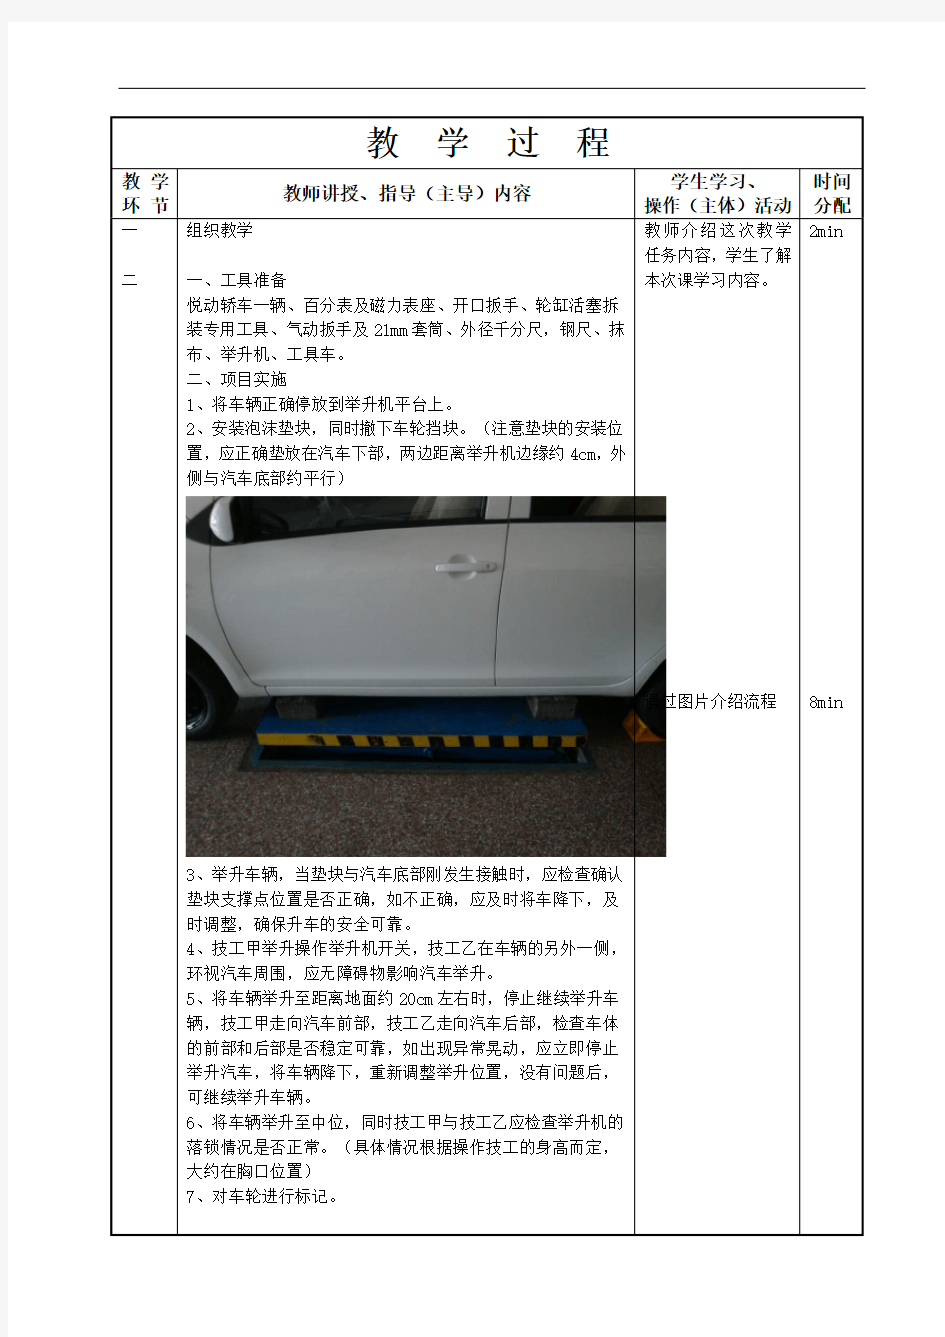 汽车底盘构造与维修-教案第1、2节  盘式制动器检查